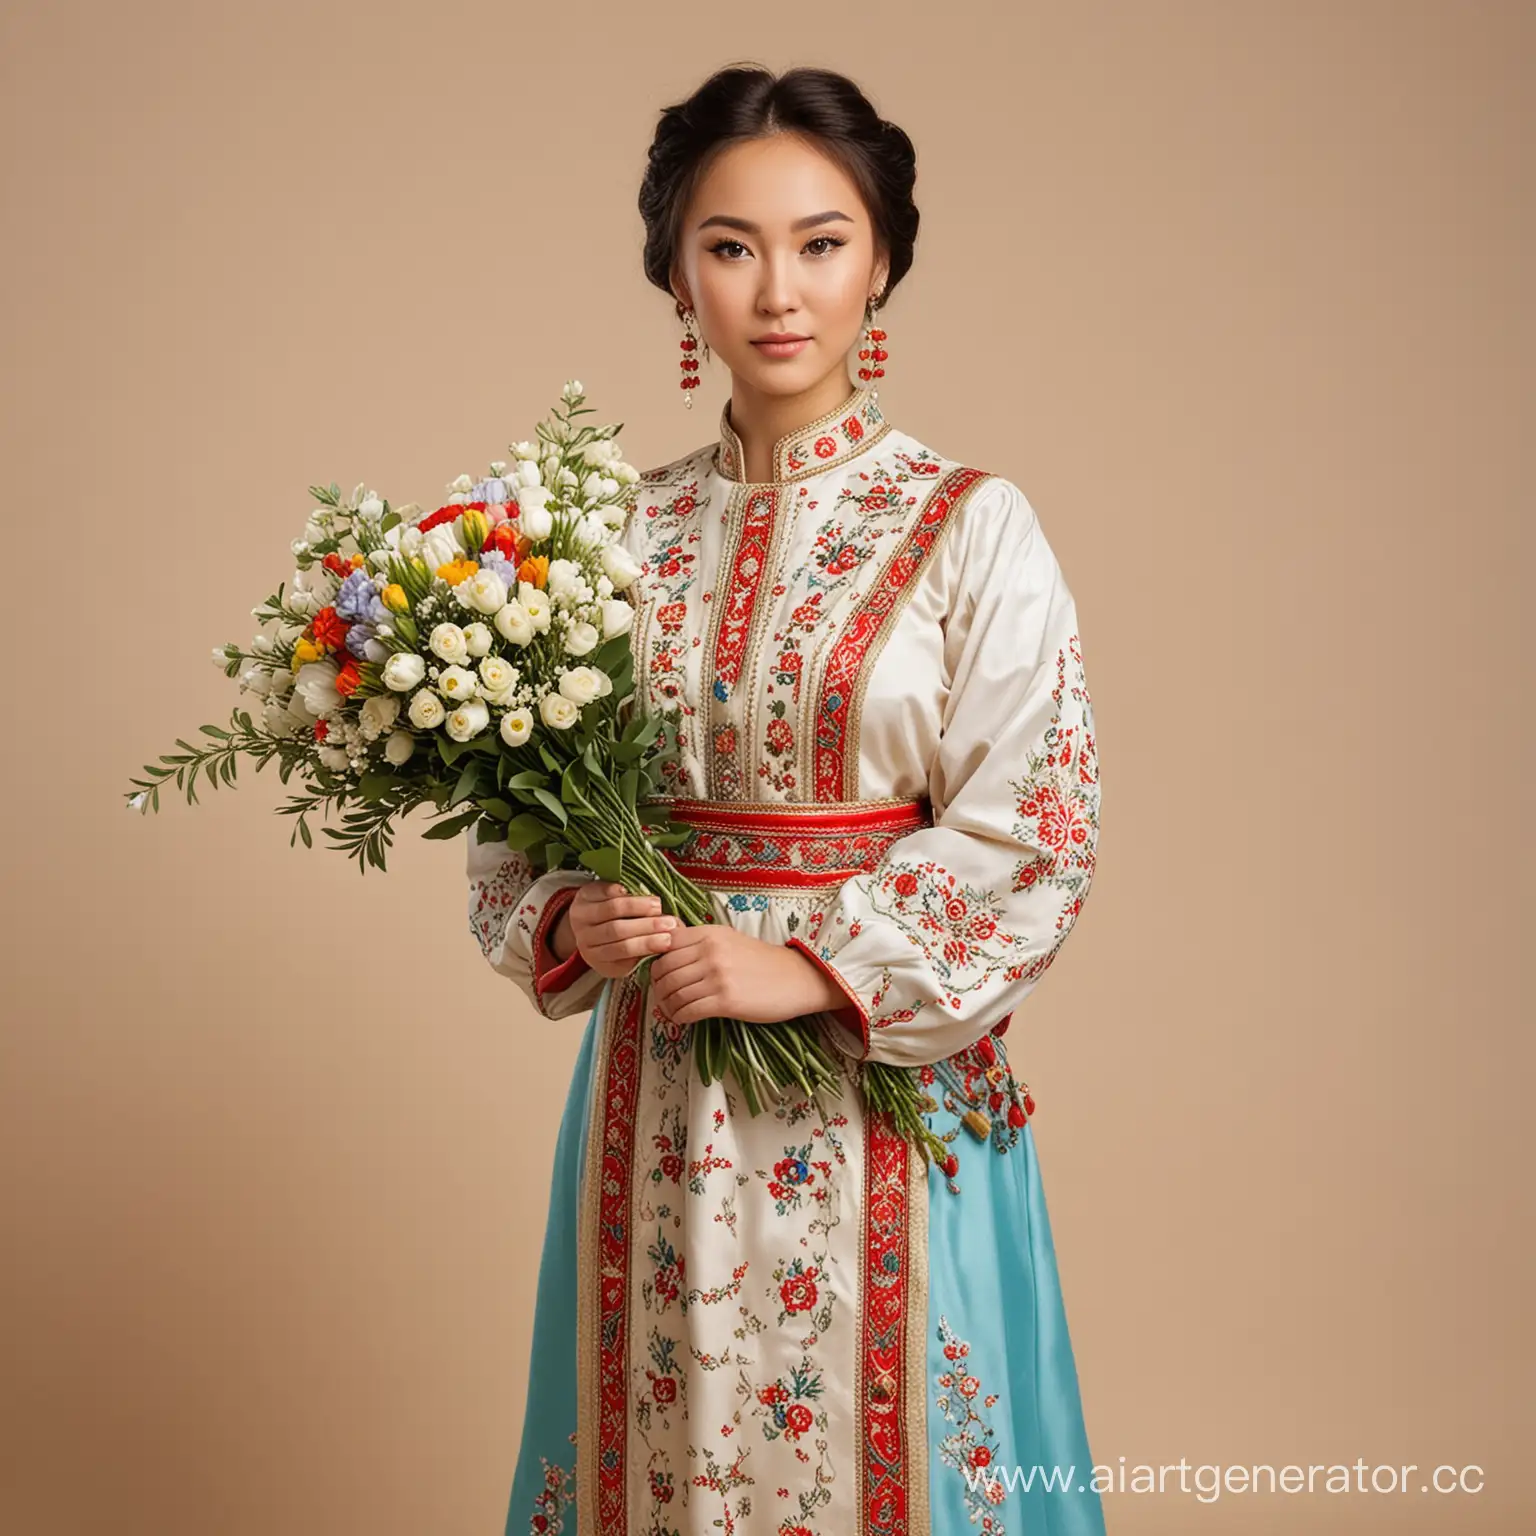 девушка казашка, в национальном платье с орнаментом, стоит на бежевом фоне, в руках держит букет цветов